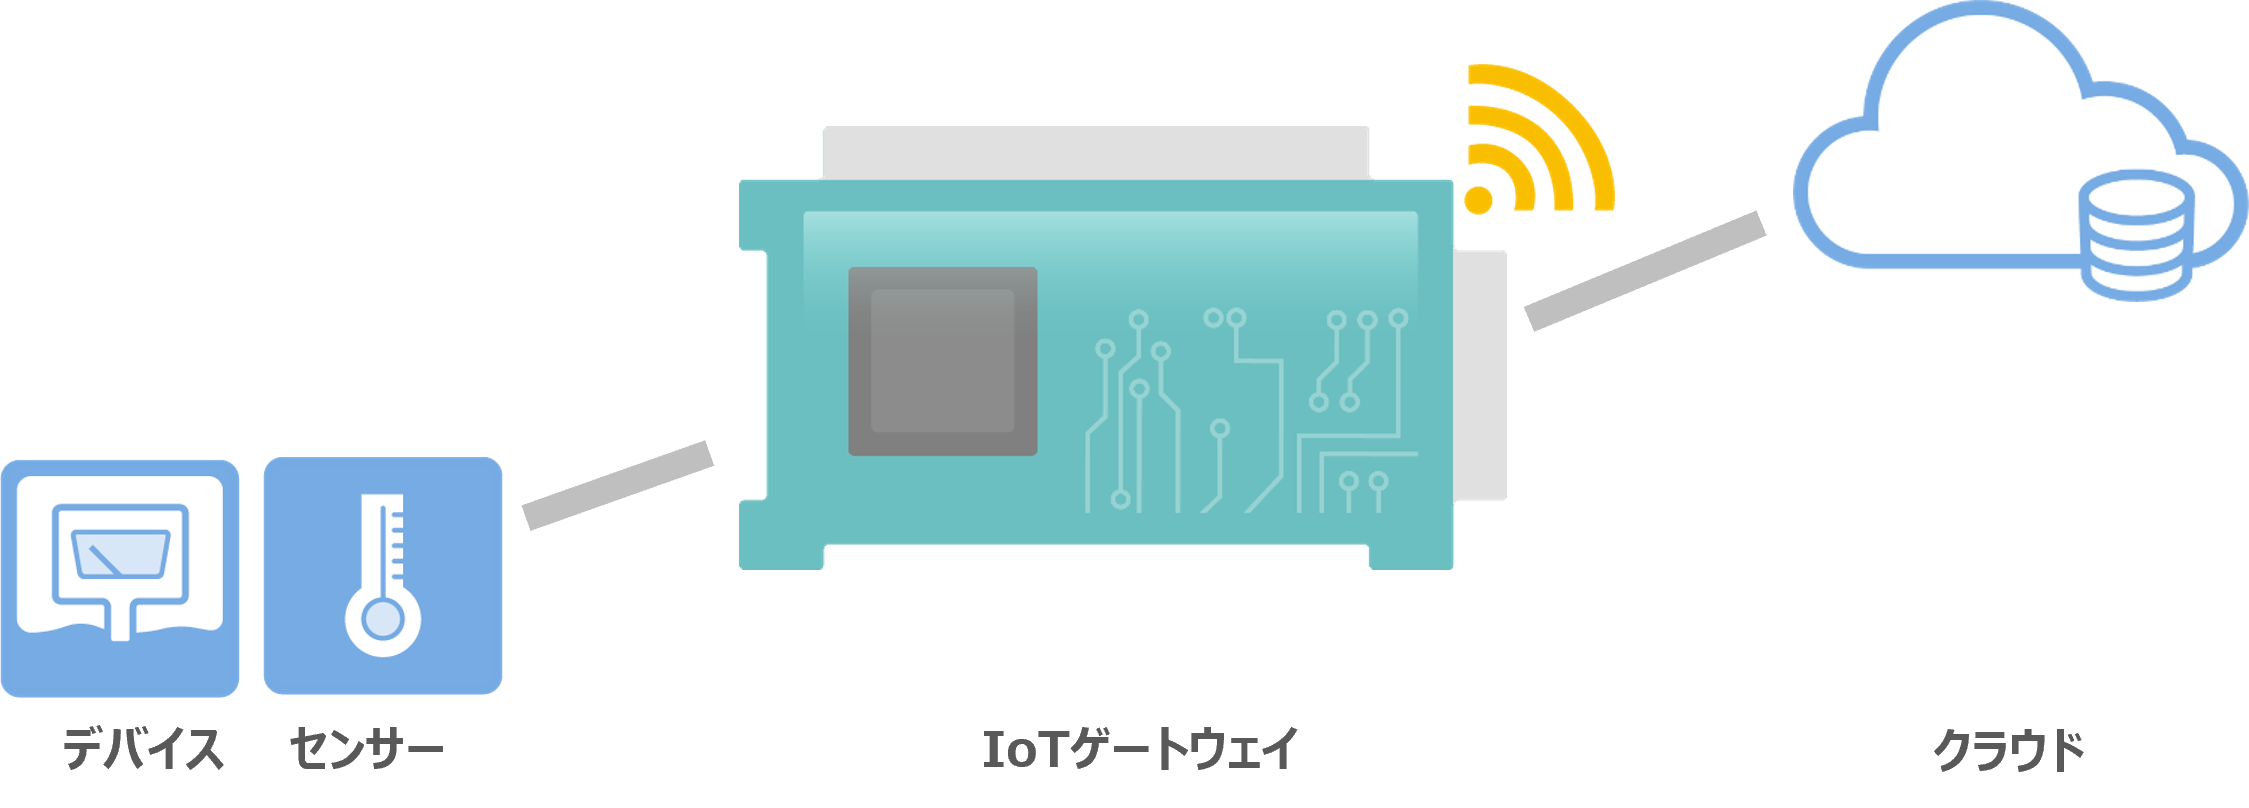 デバイスやセンサーをクラウドサーバーとワイヤレス通信でつなぎ、データの送受信を実現する通信ネットワーク（通信ゲートウェイ）を提供